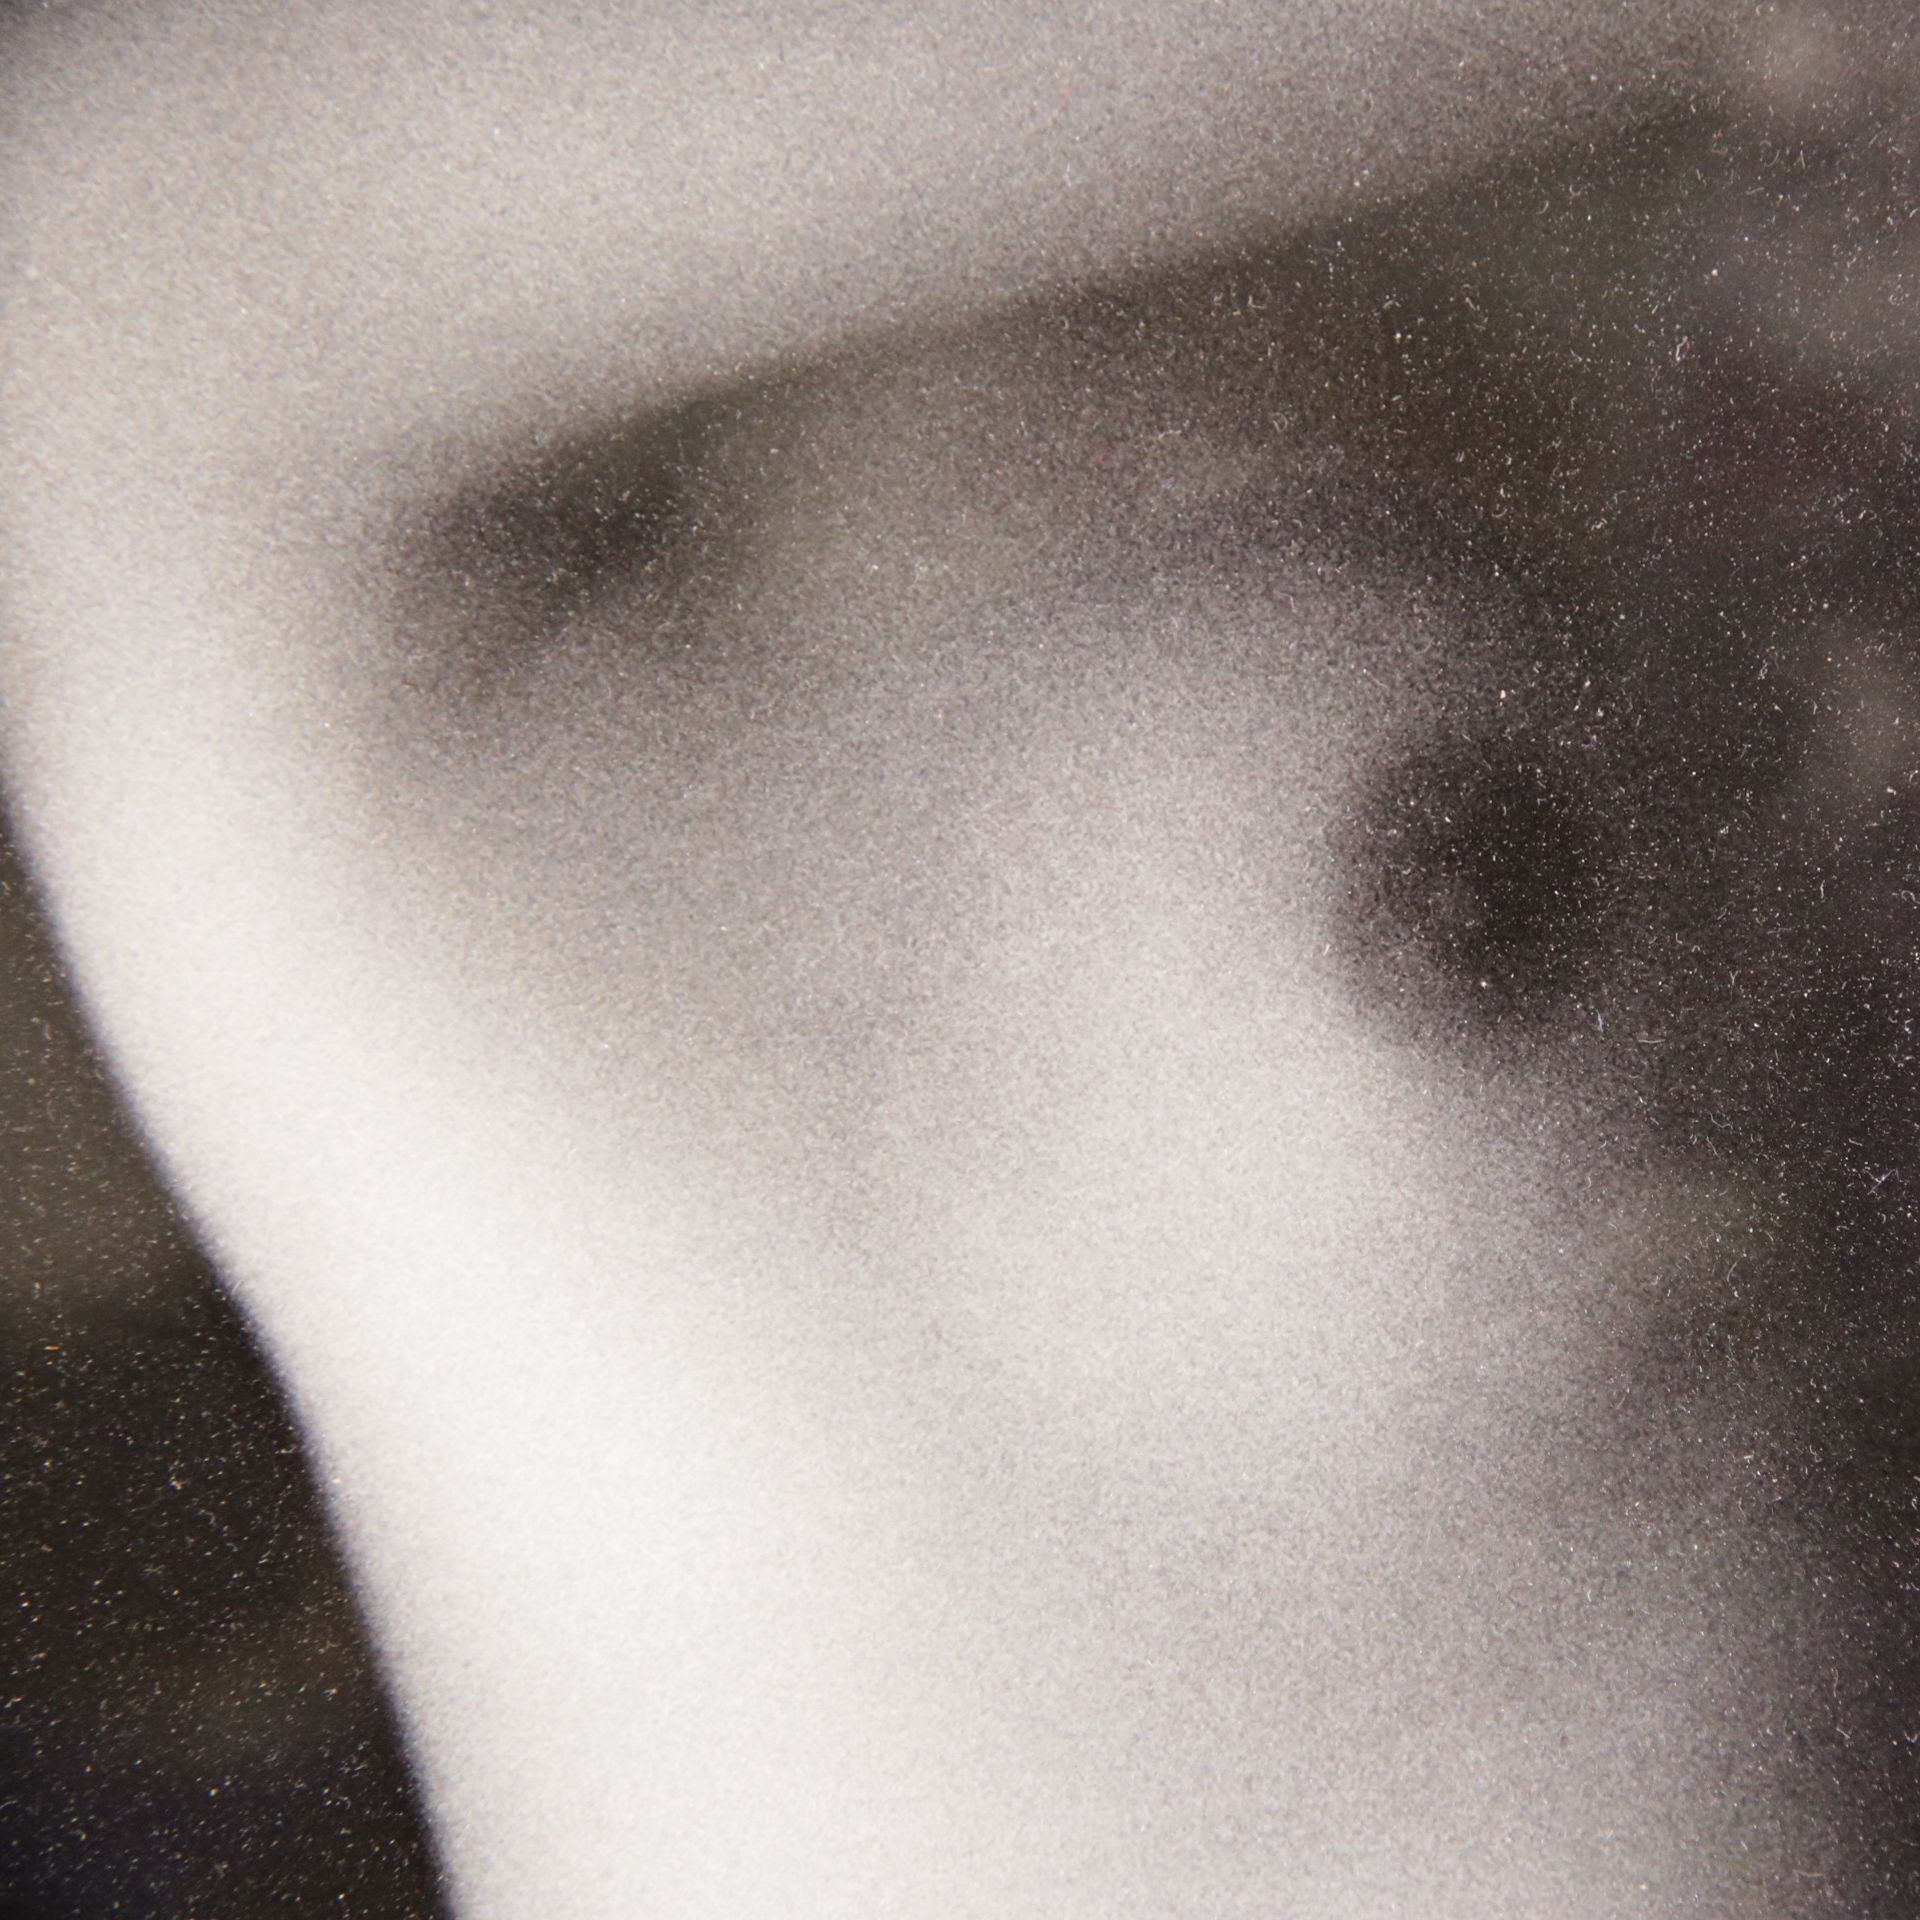 Marc JONES "Naked woman", 2006, framed black on white print, 4/8, 2006. Contemporary French art. - Bild 3 aus 5